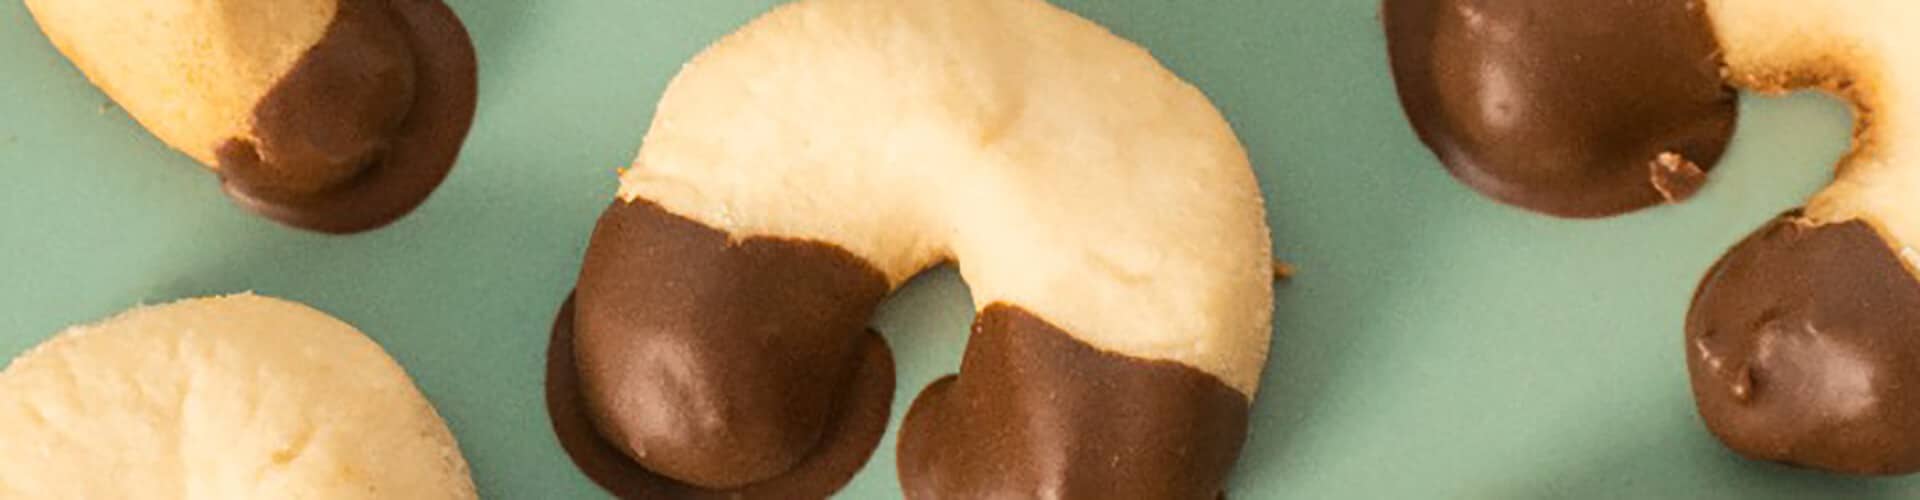 biscoito proteico com chocolate em um prato